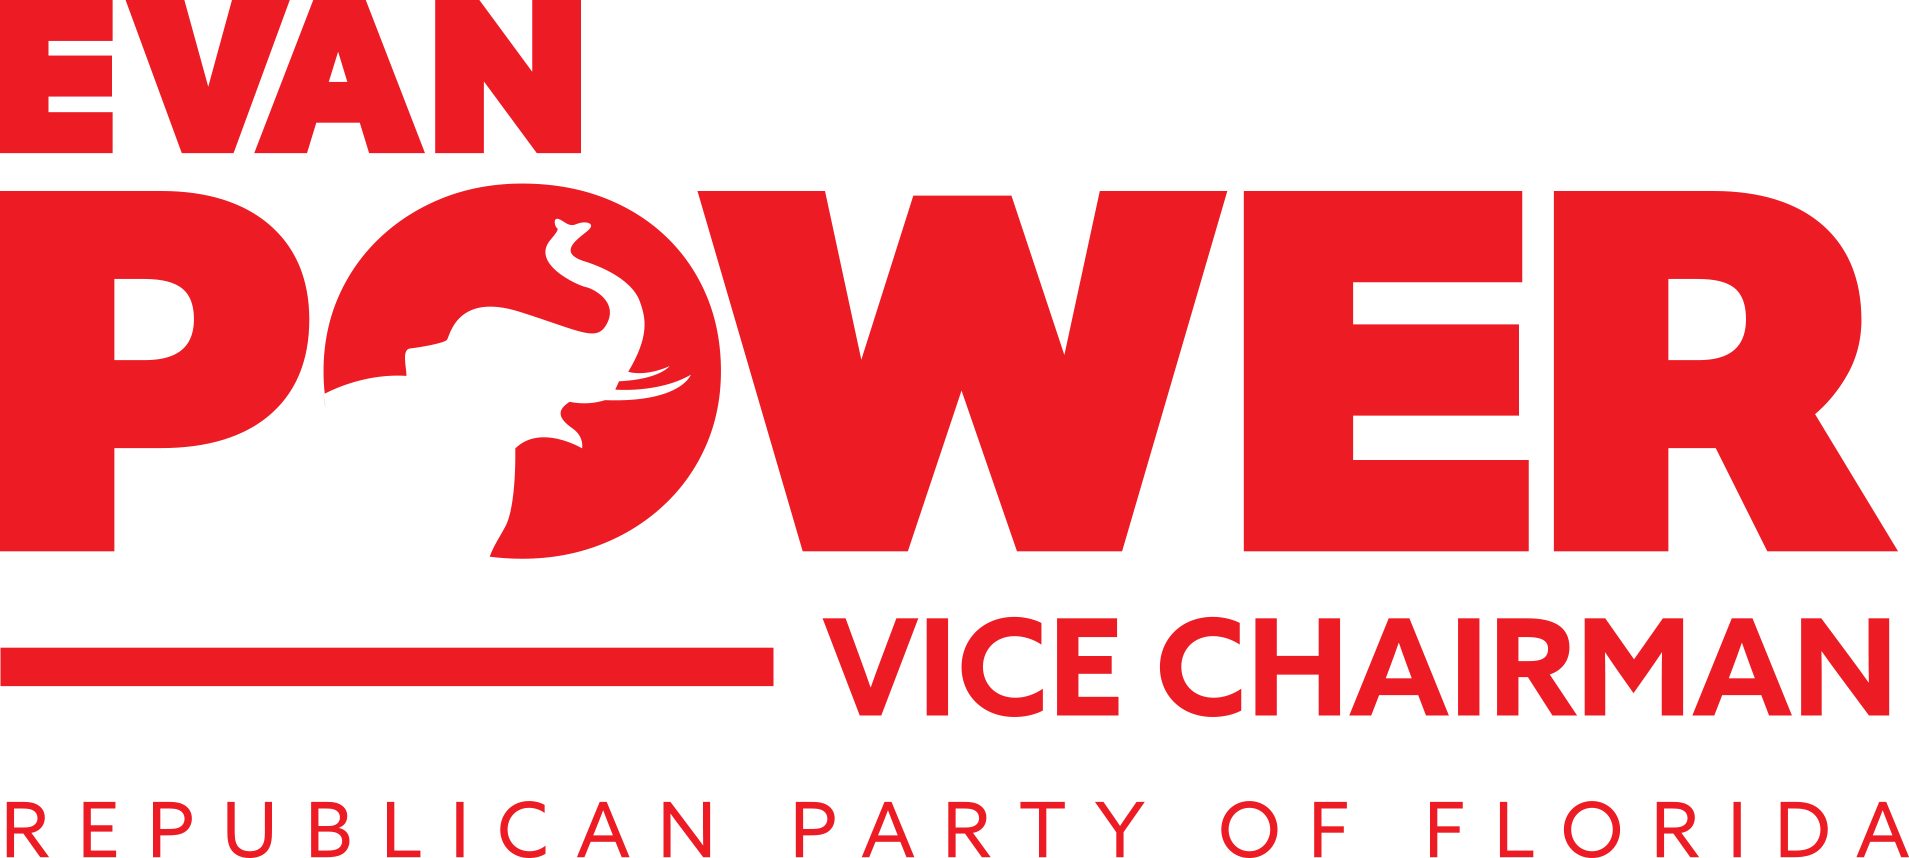 Logo power vice chairman 1 copy